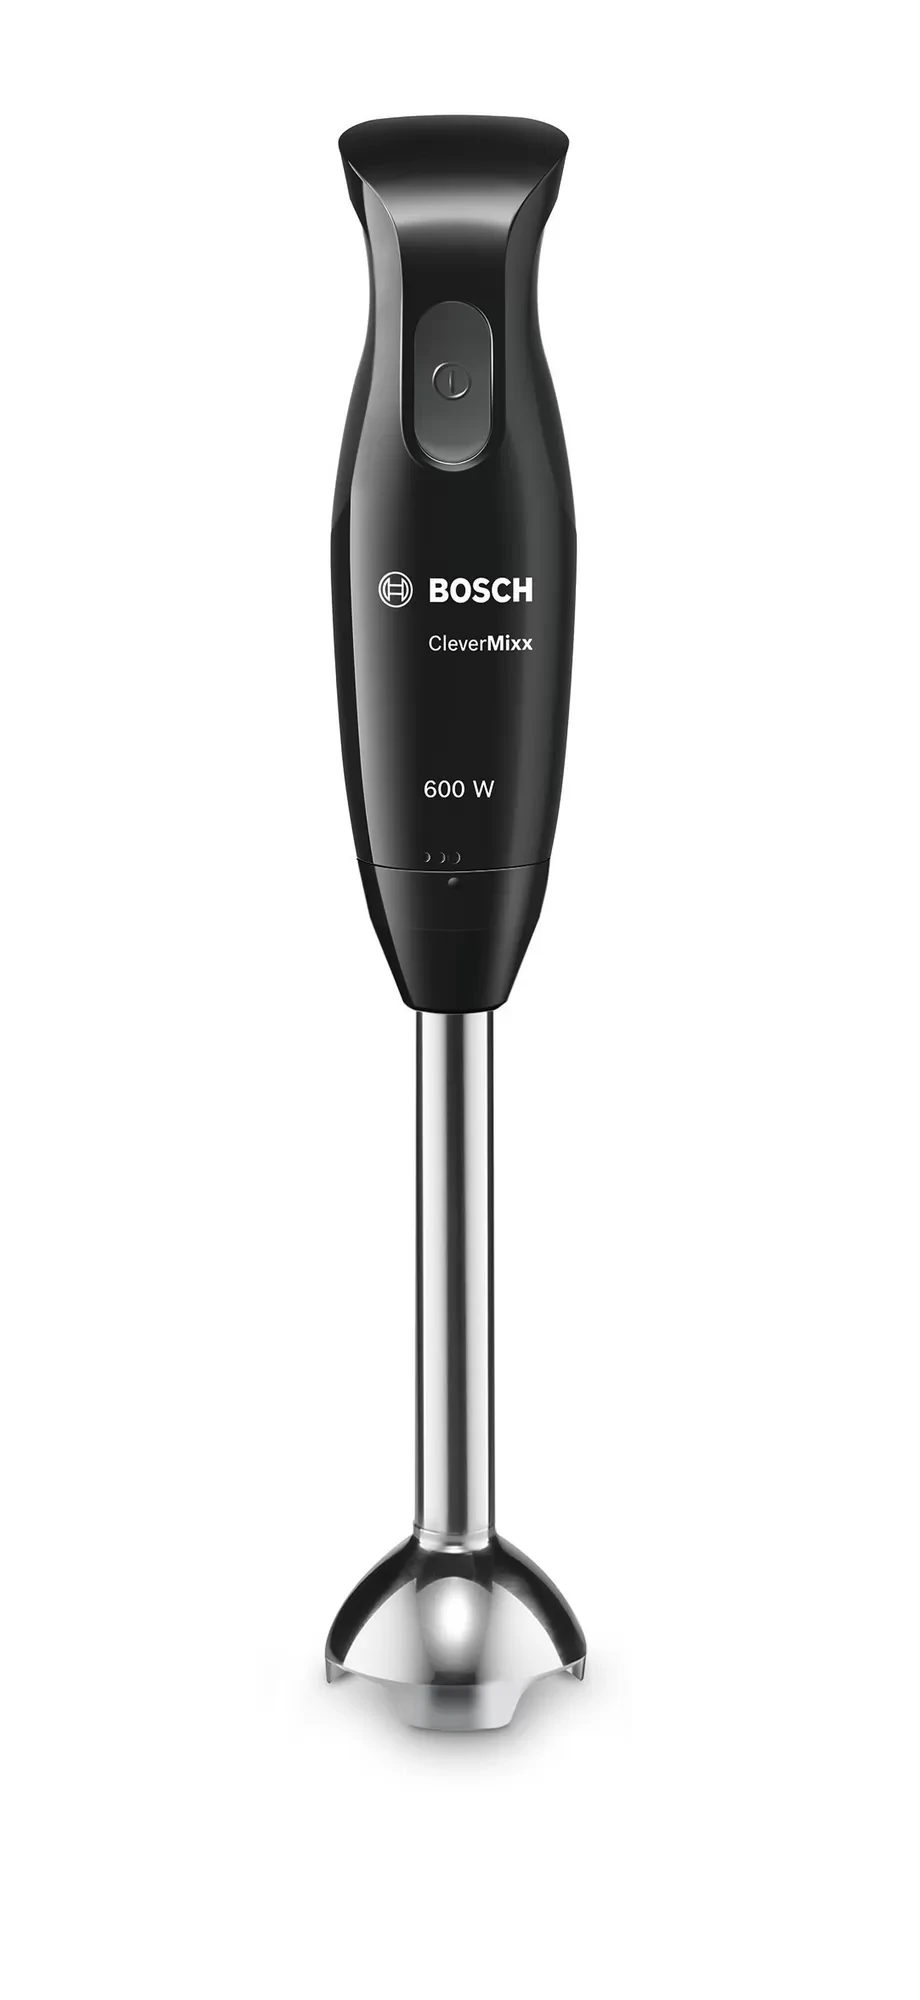 Bosch stavmixer CleverMixx 600W (1 av 6)